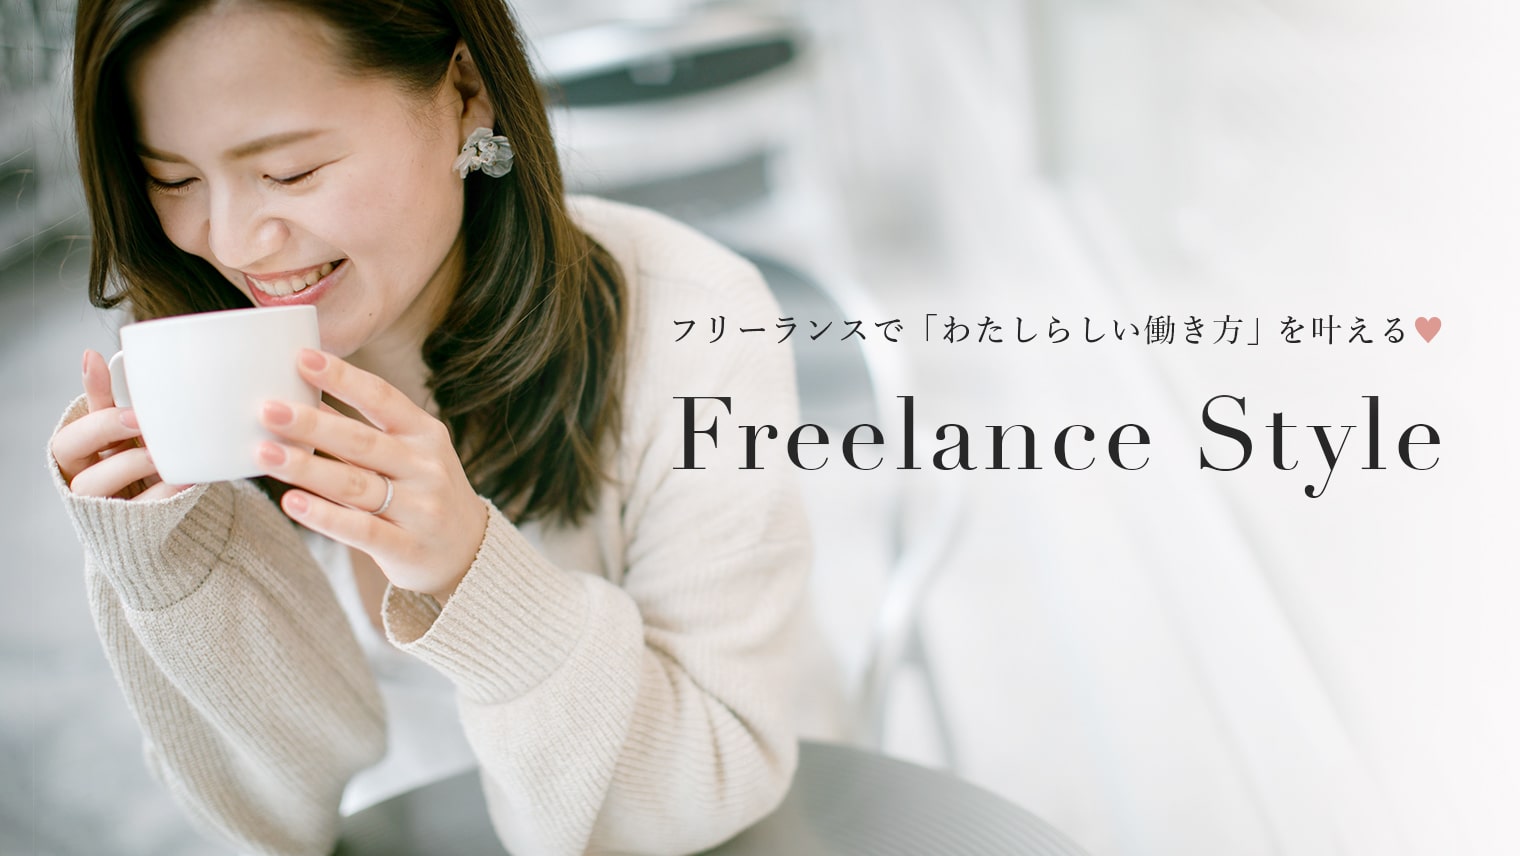 Freelance Style -フリーランスで叶えるわたしらしい働き方-